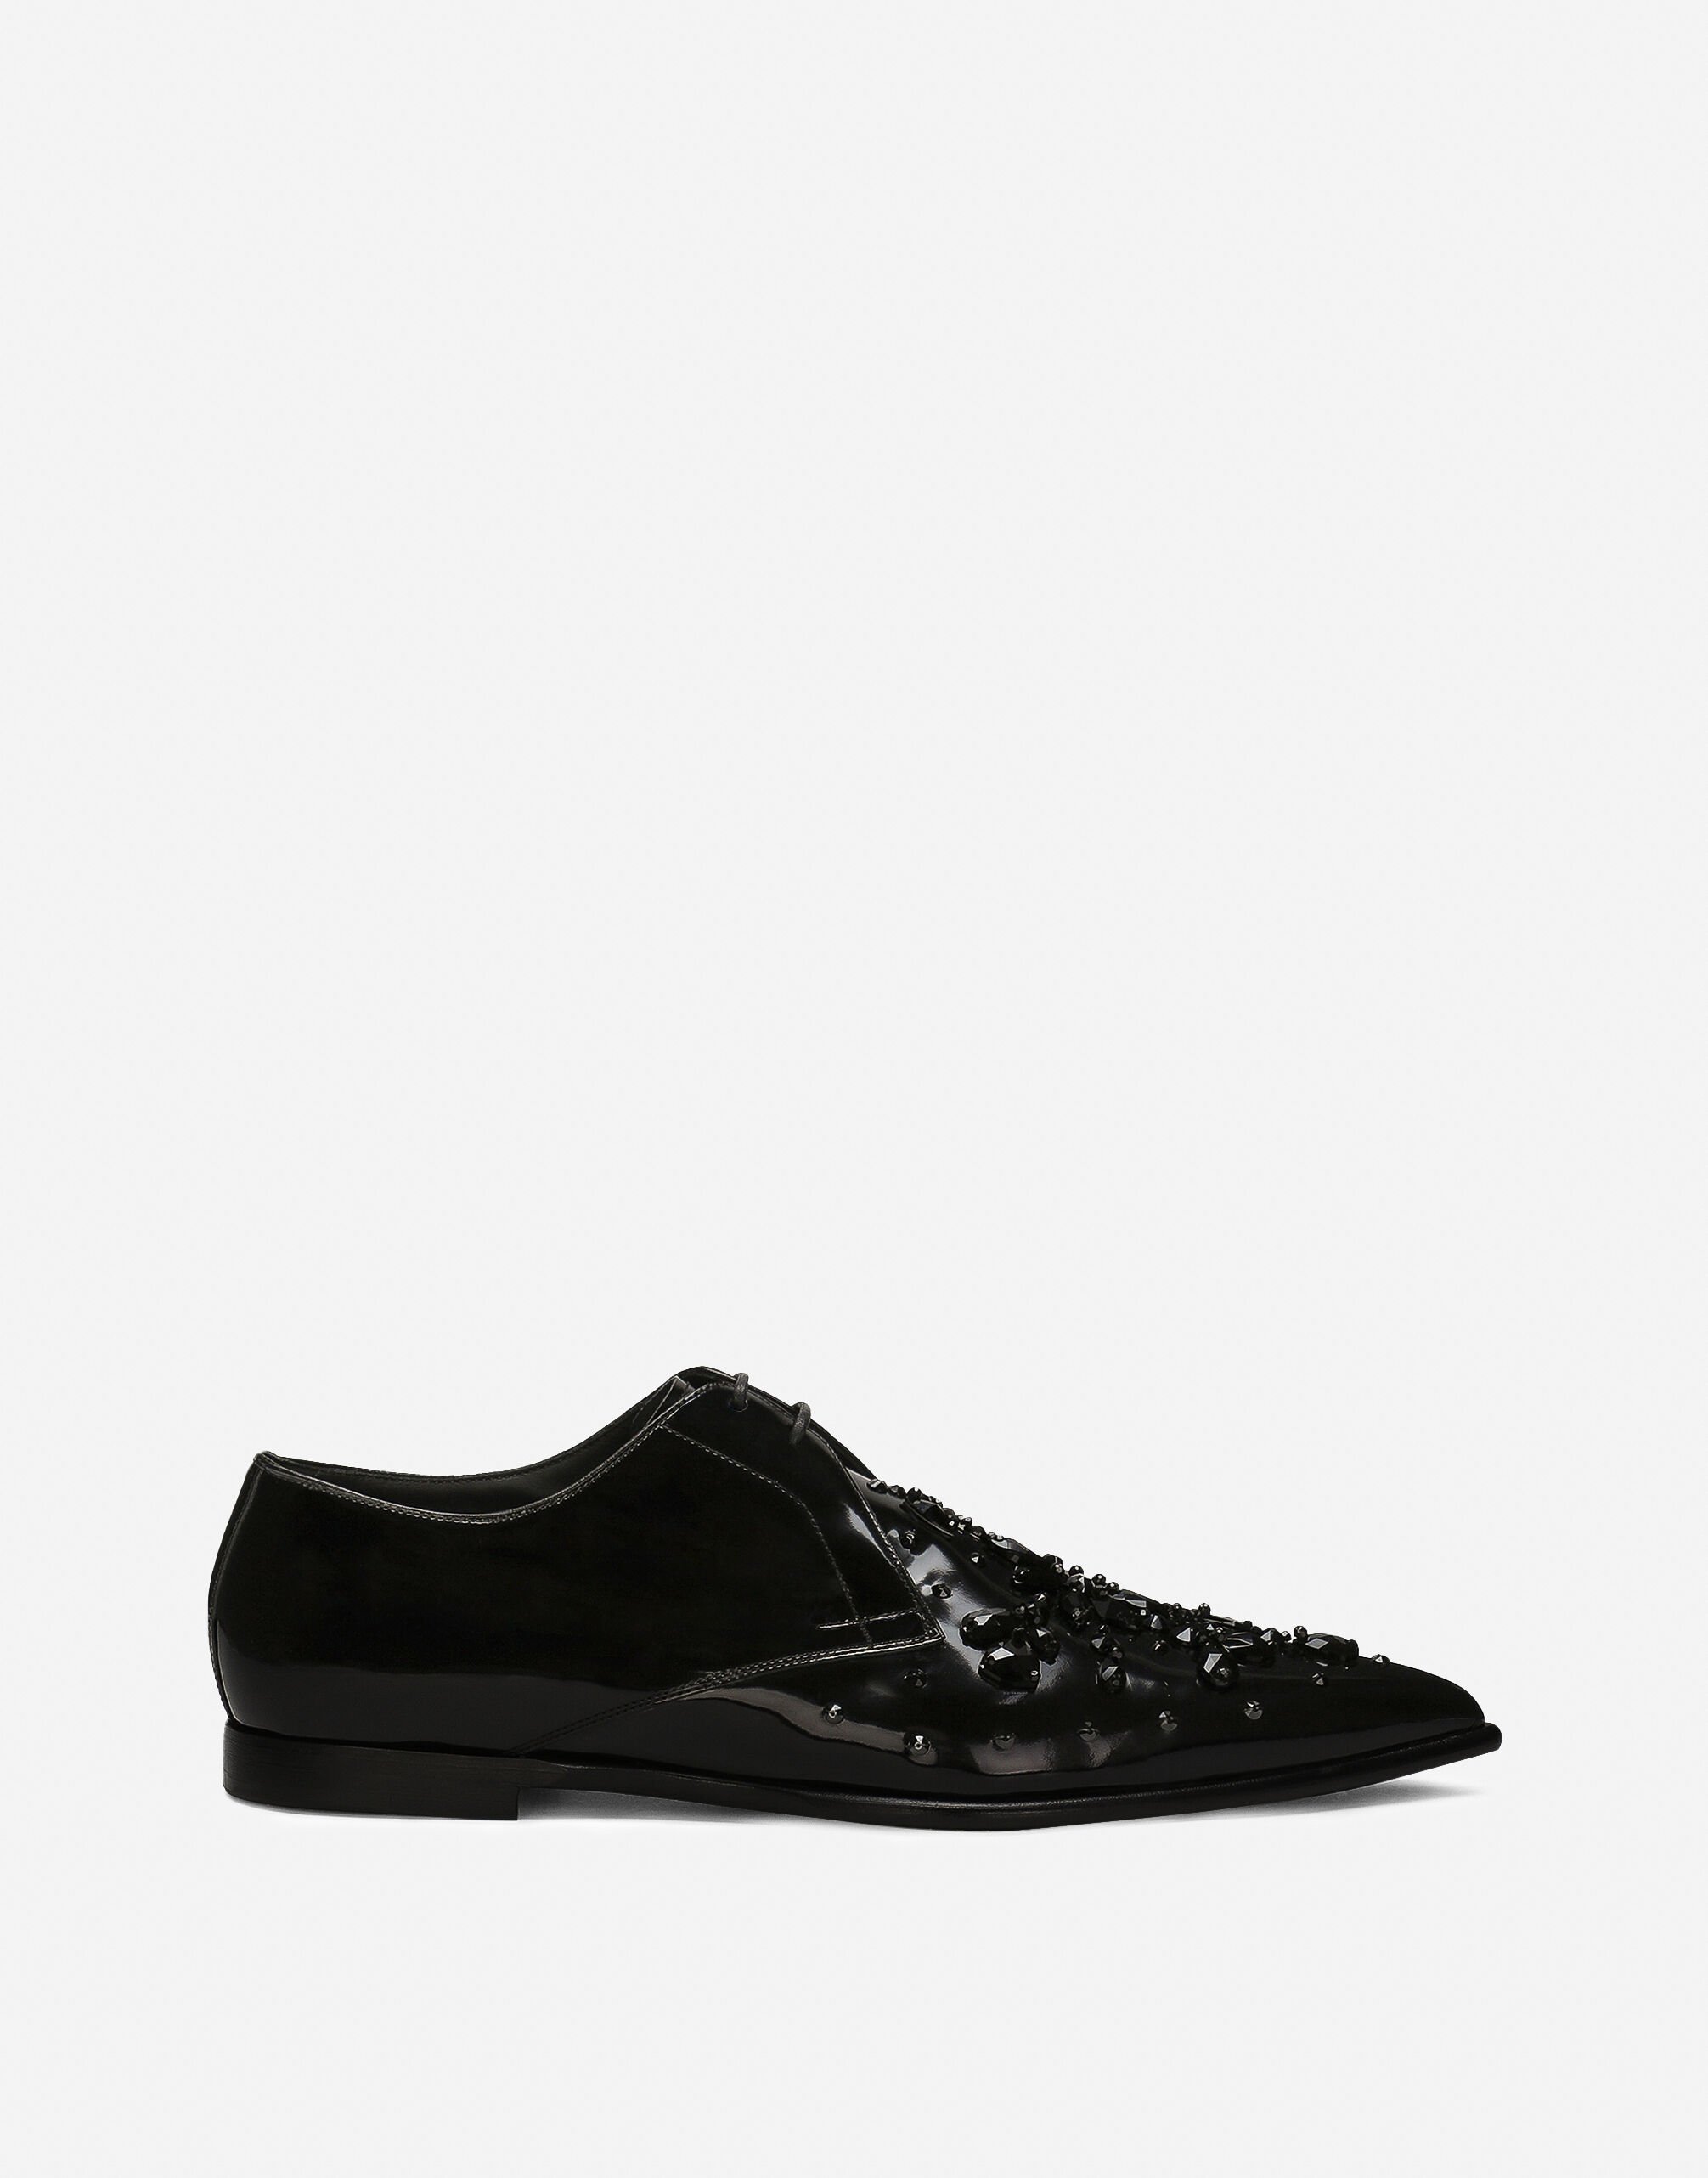 Dolce & Gabbana Calfskin Derby shoes Black A10840A1203